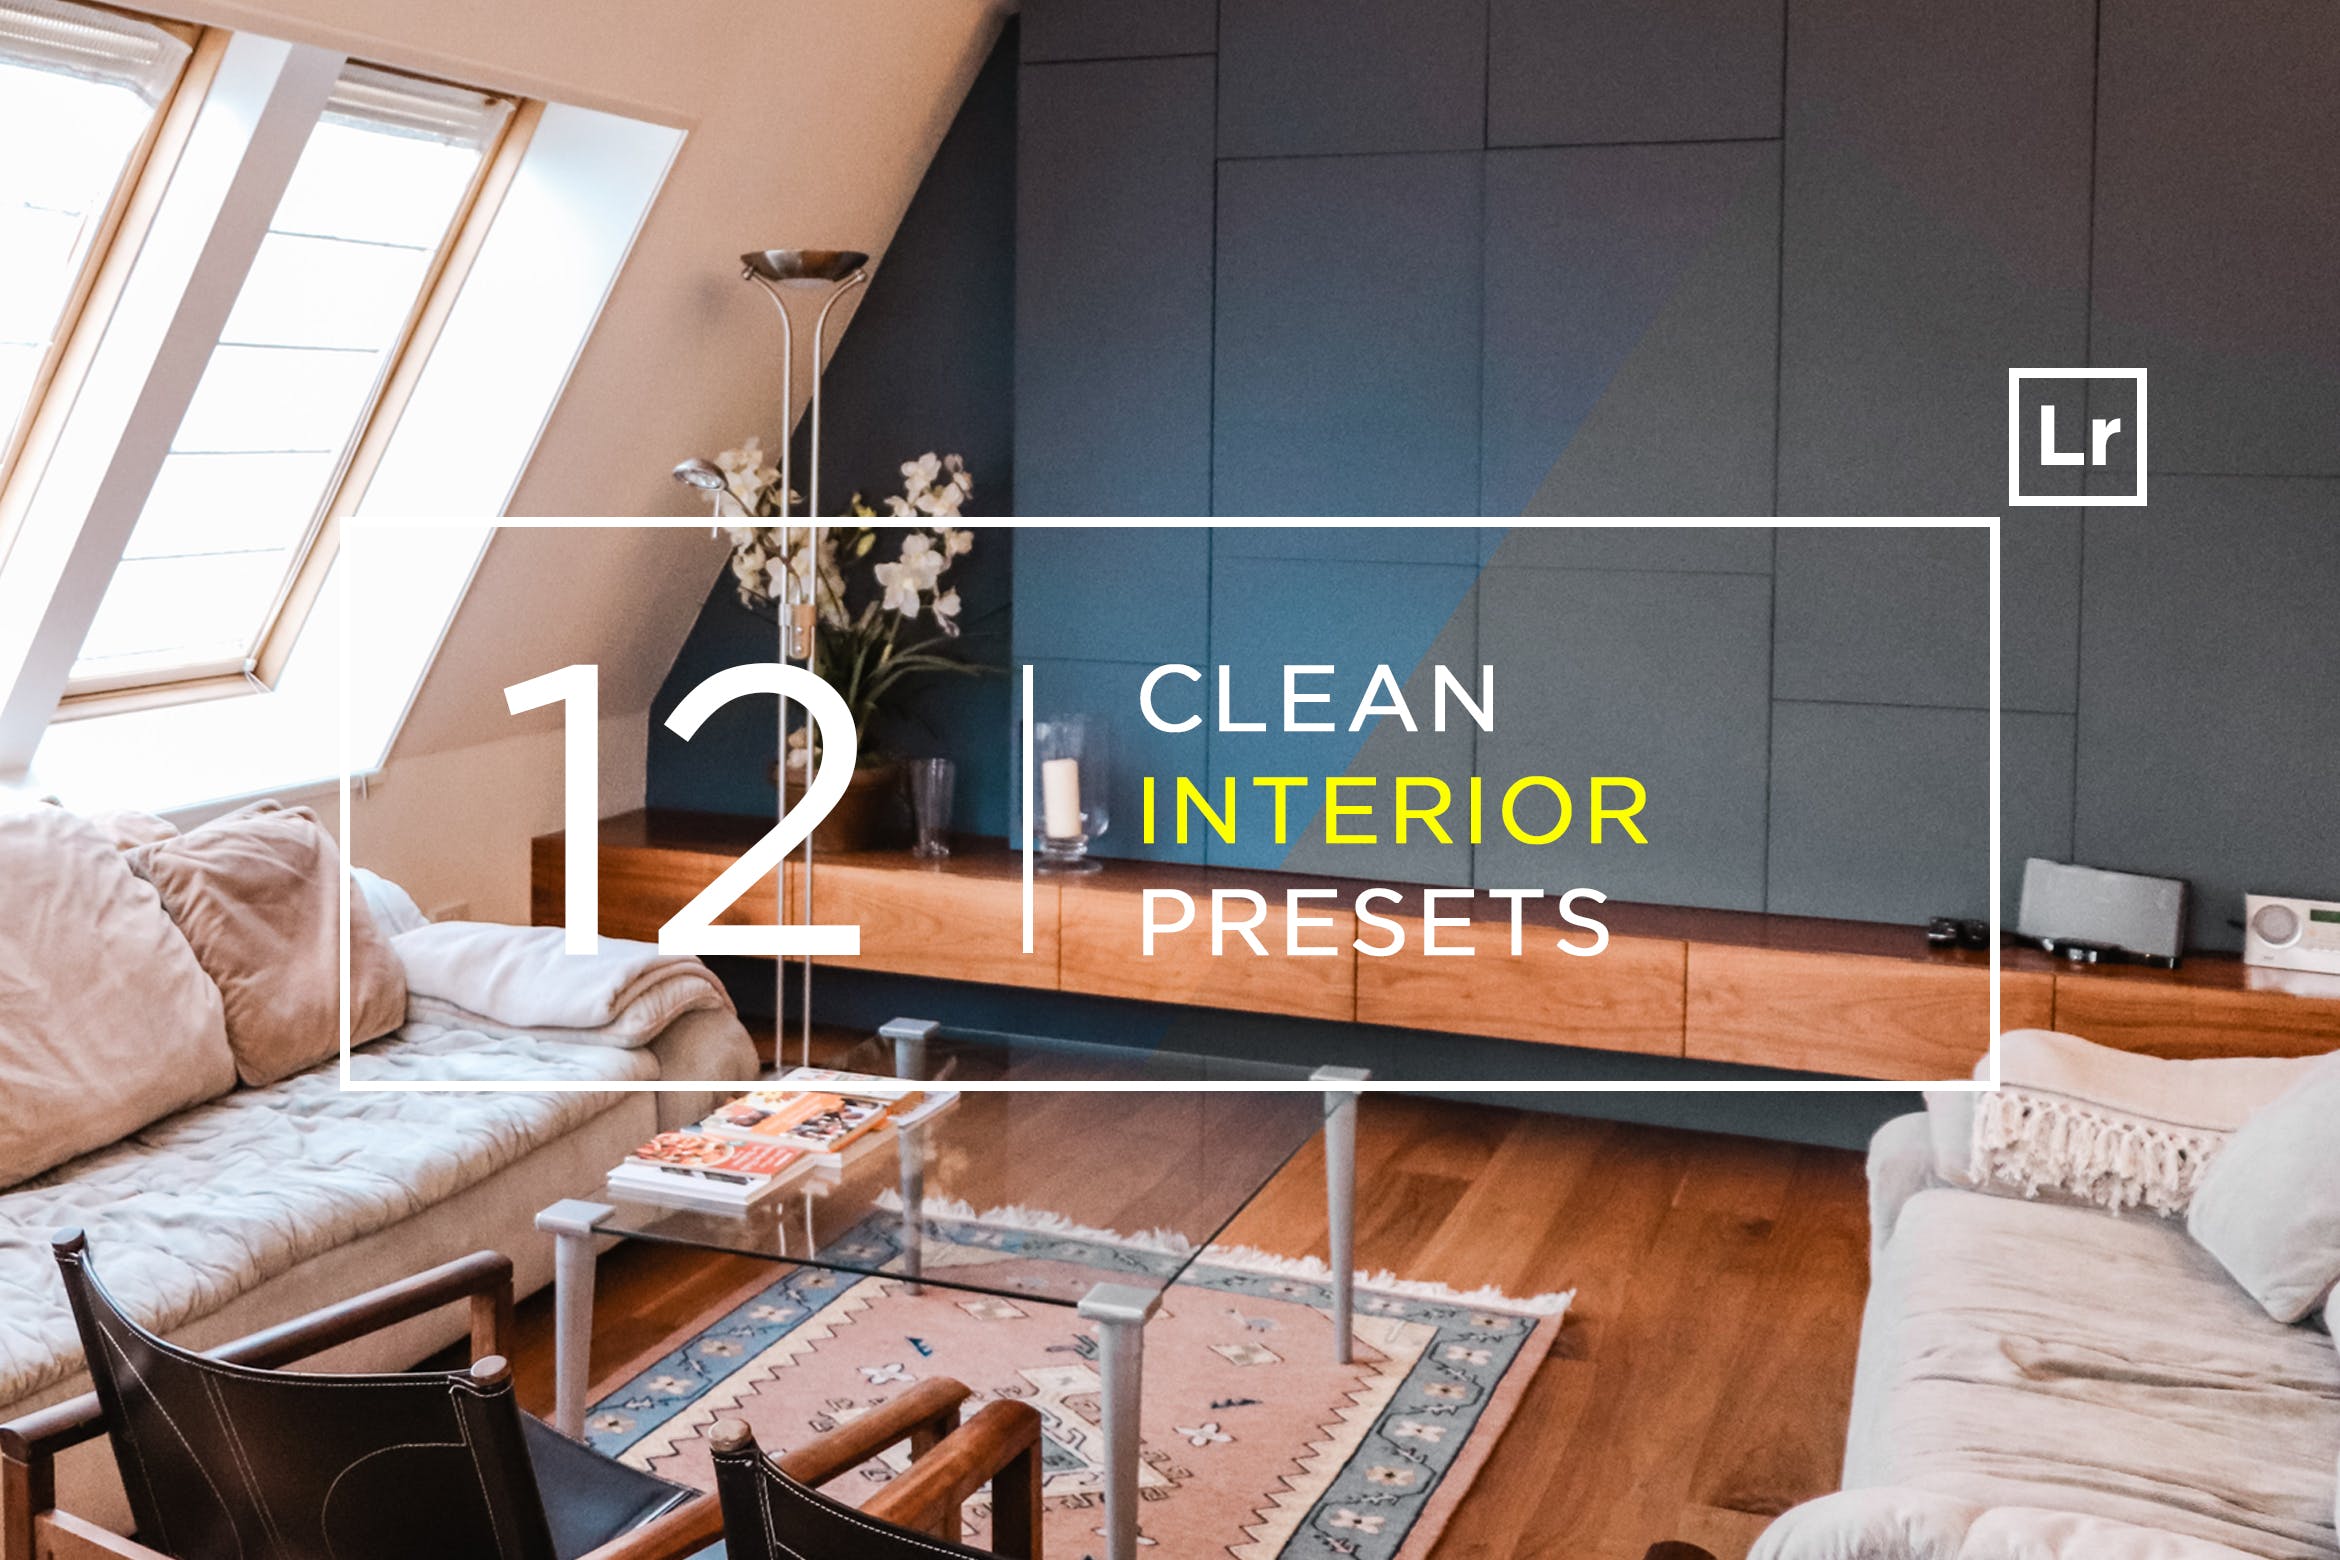 12款室内摄影必备的调色滤镜16素材精选LR预设 12 Clean Interior Lightroom Presets插图